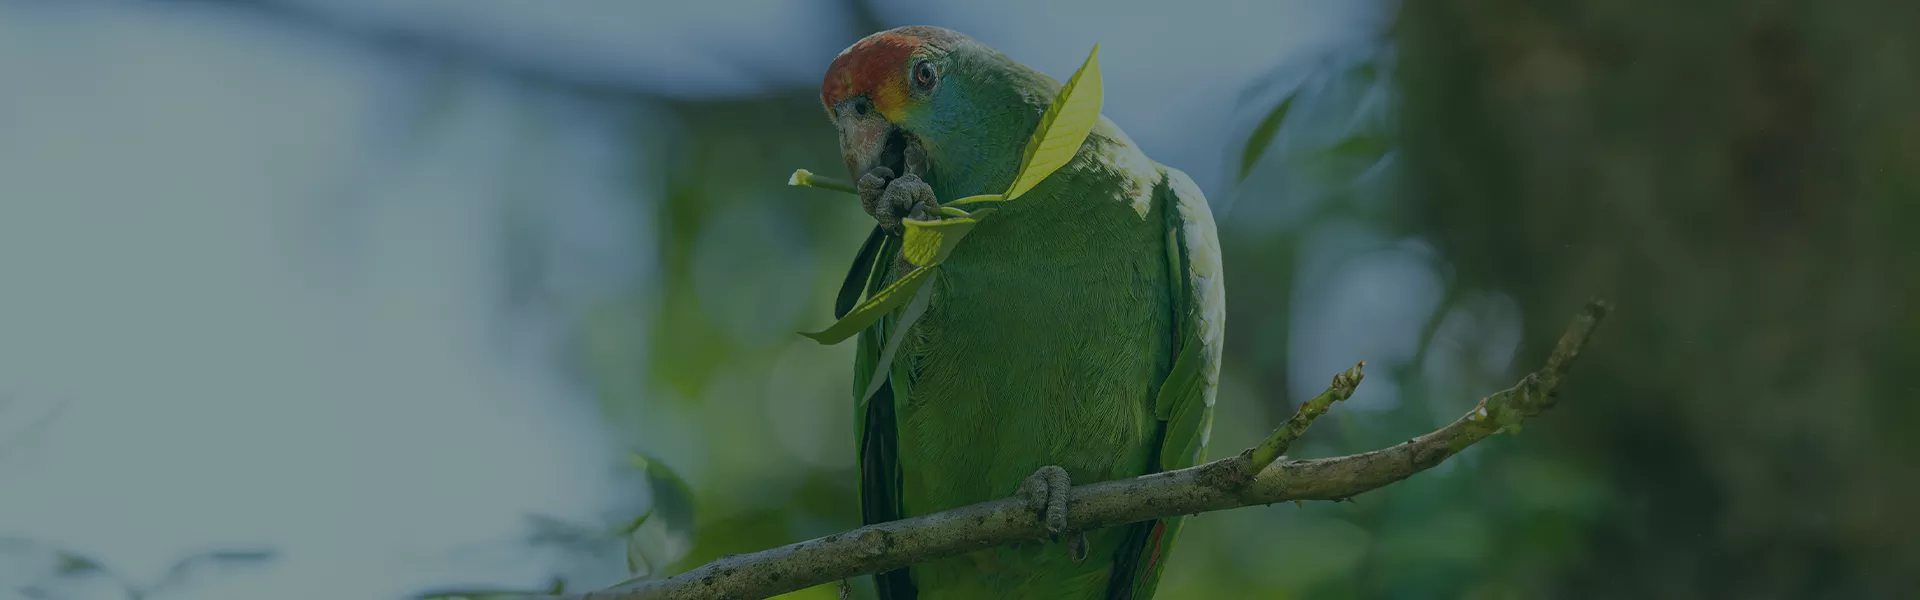 Papagaio-chauá